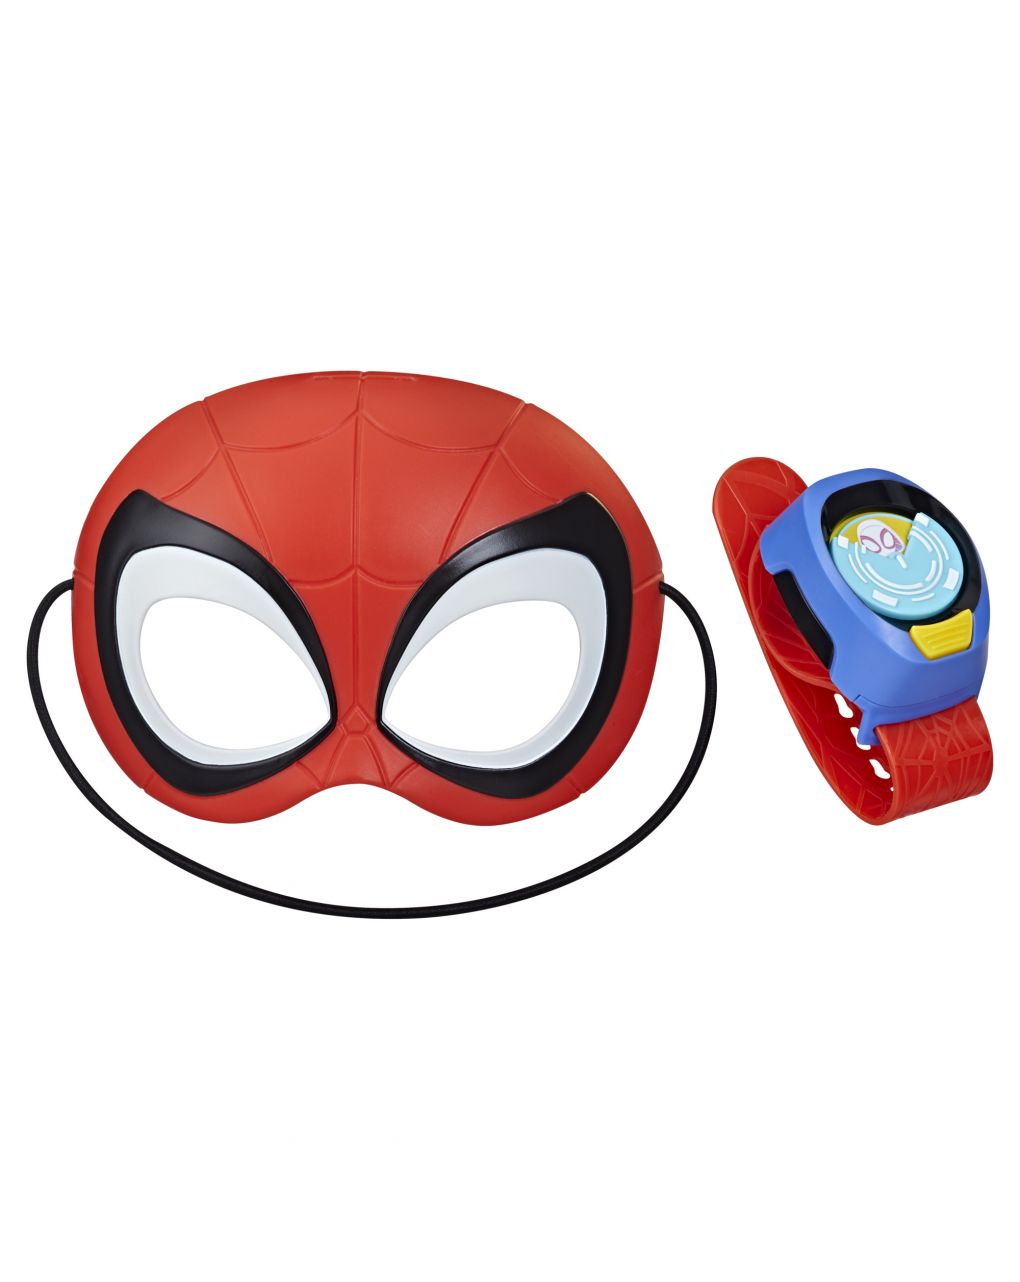 Marvel spidey e i suoi fantastici amici: web kit orologio e maschera di spidey 3+ anni - hasbro - Spidey